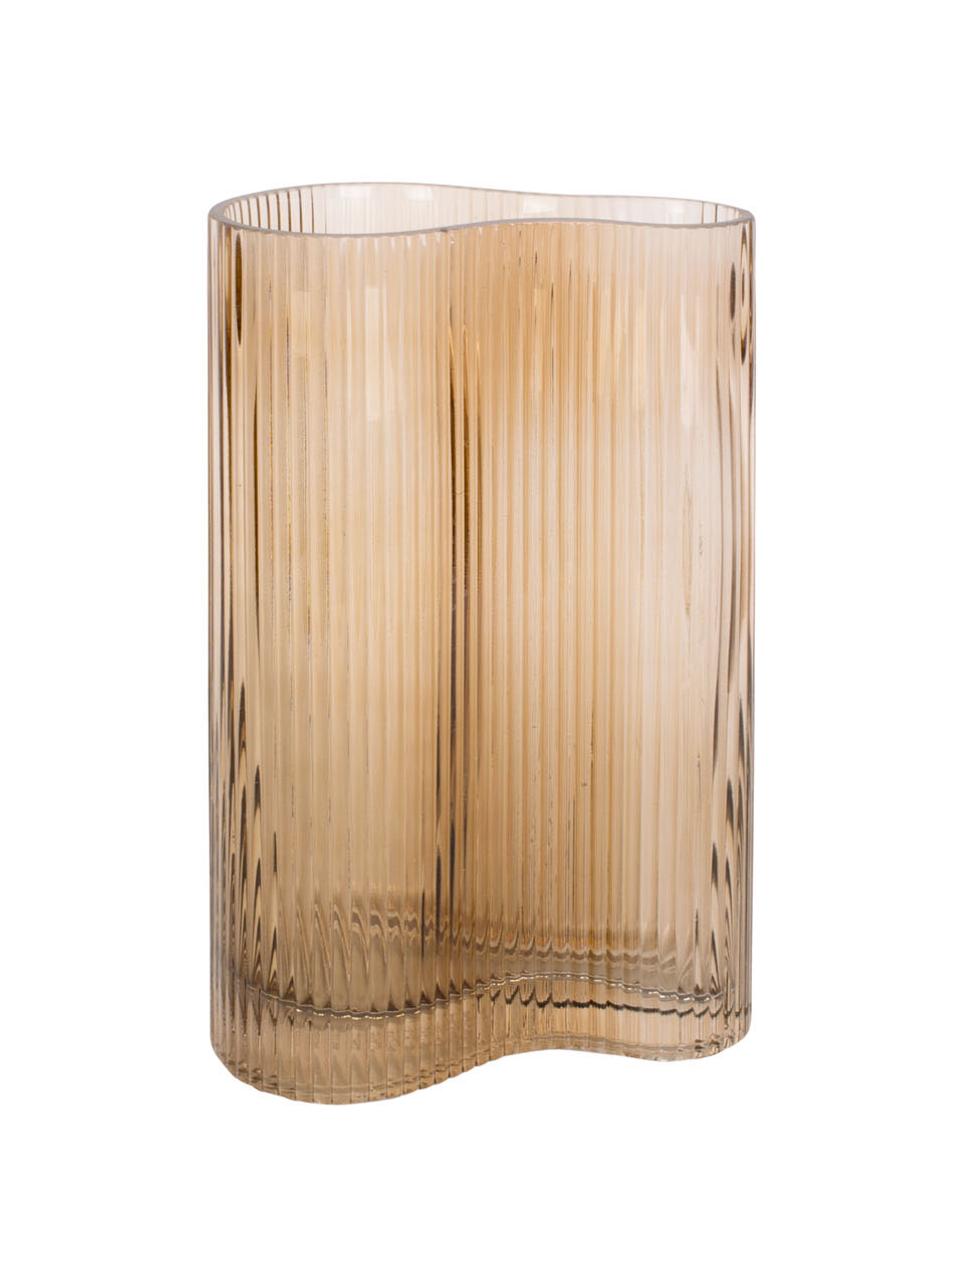 Glazen vaas Allure Wave in lichtbruin, Getint glas, Lichtbruin, 10 x 27 cm